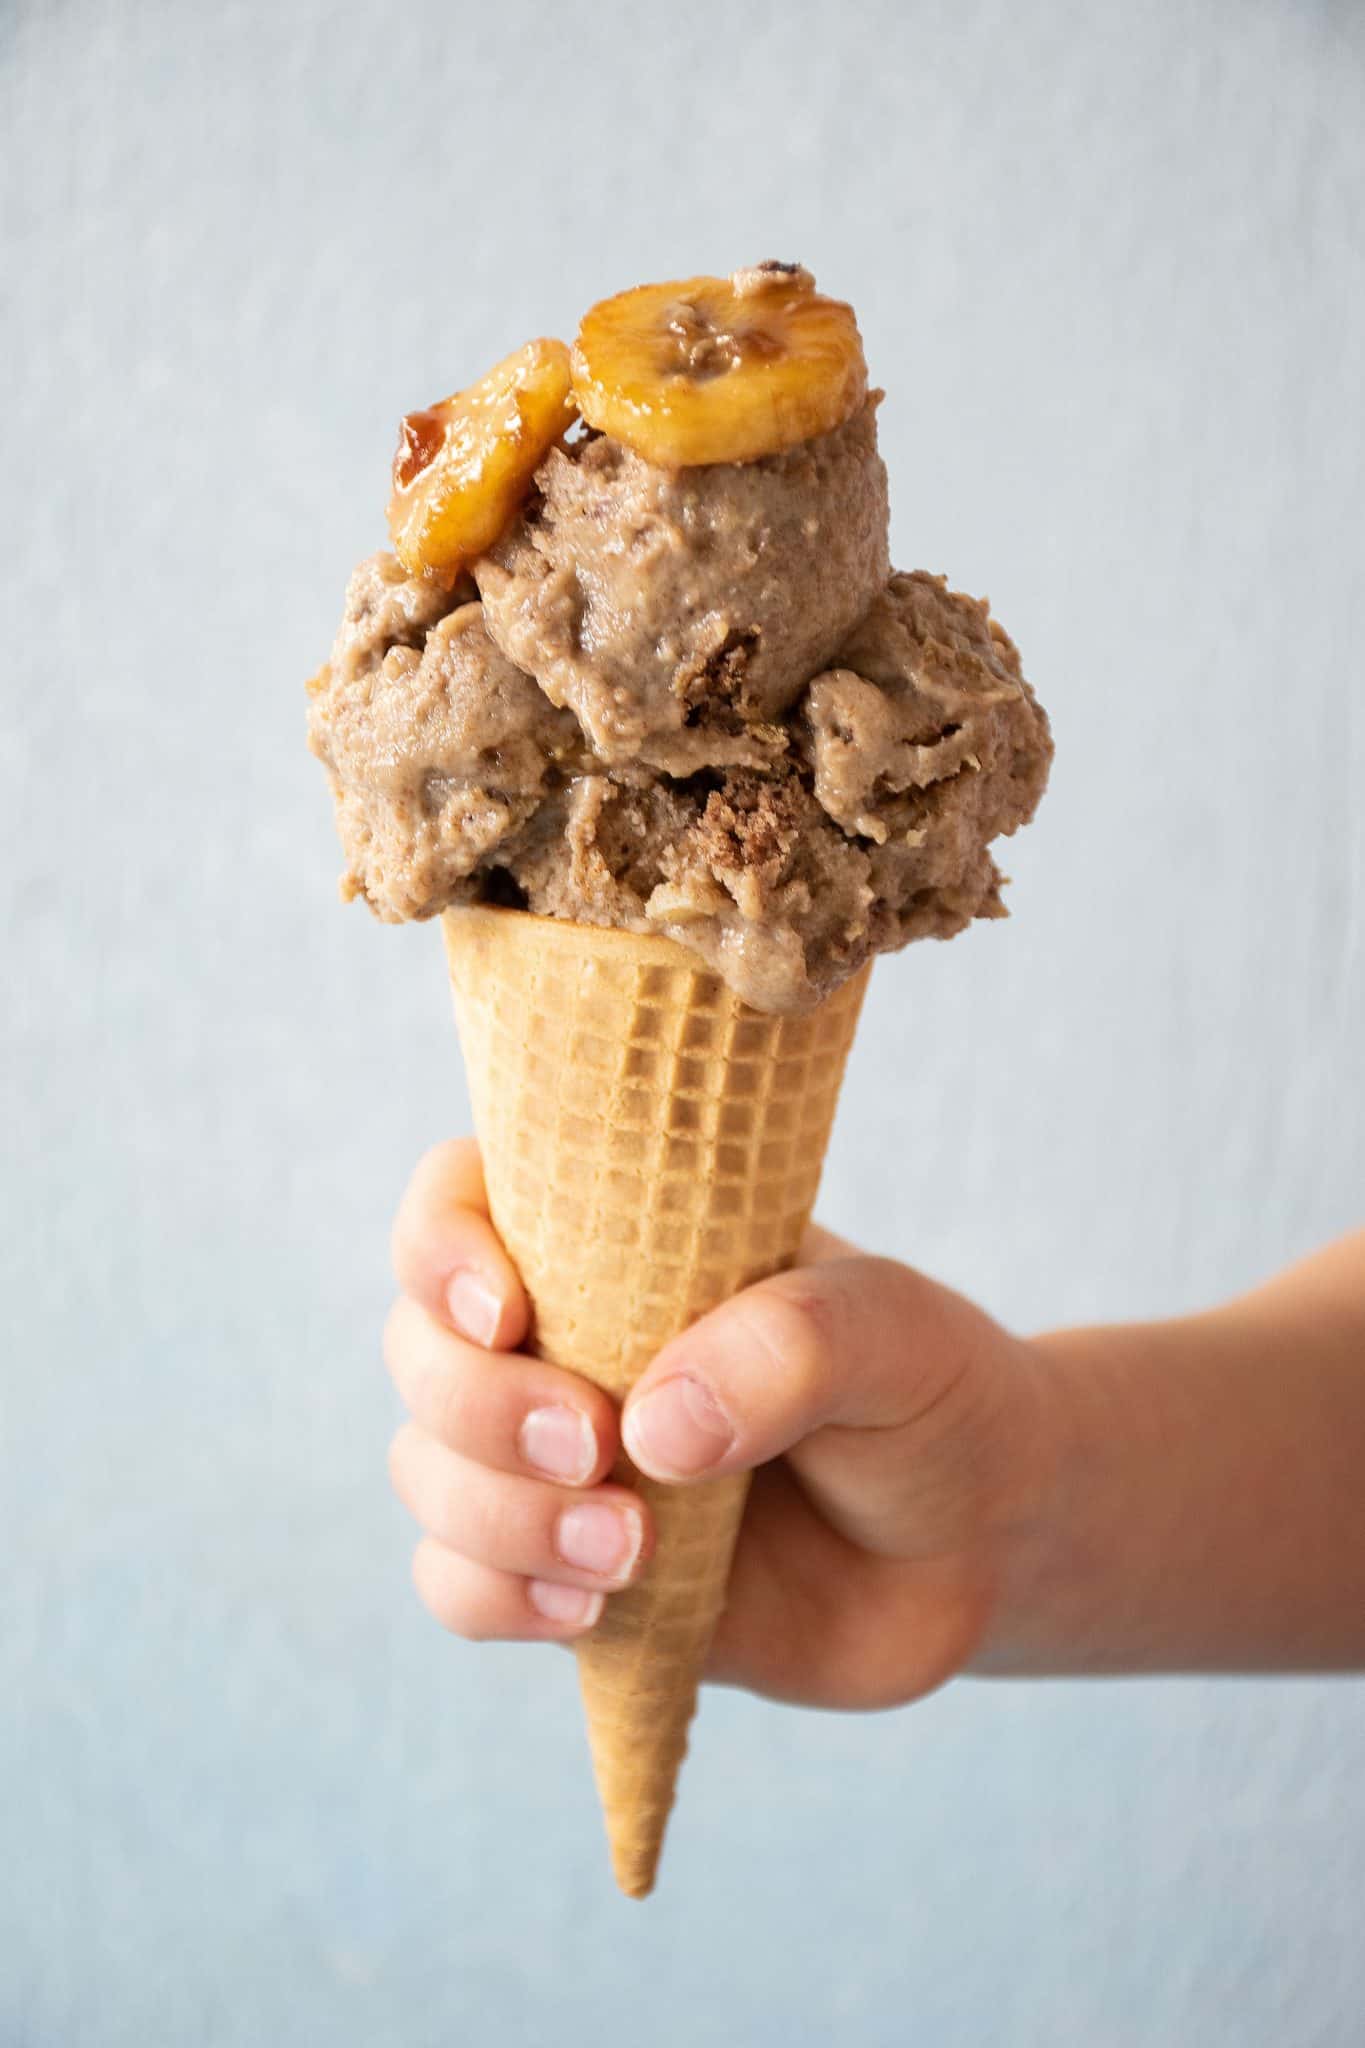 Ice cream in a sugar cone.